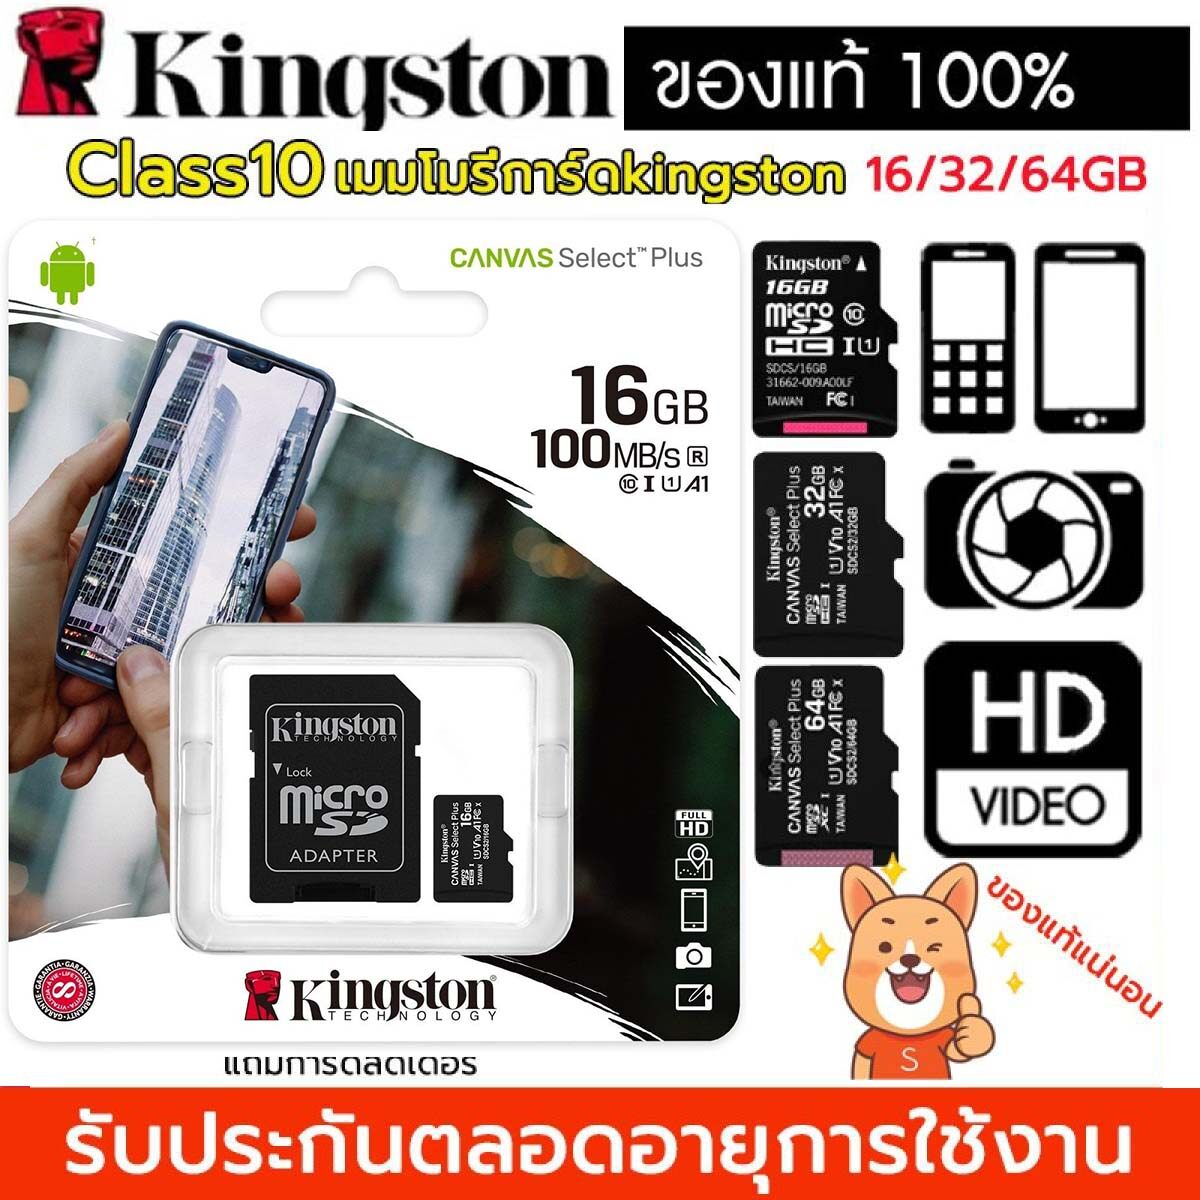 [[ของแท้]] Kingston 16GB/32GB /64GBClass10 CardMicroSD SDHC คิงส์ตัน เมมโมรี่การ์ด